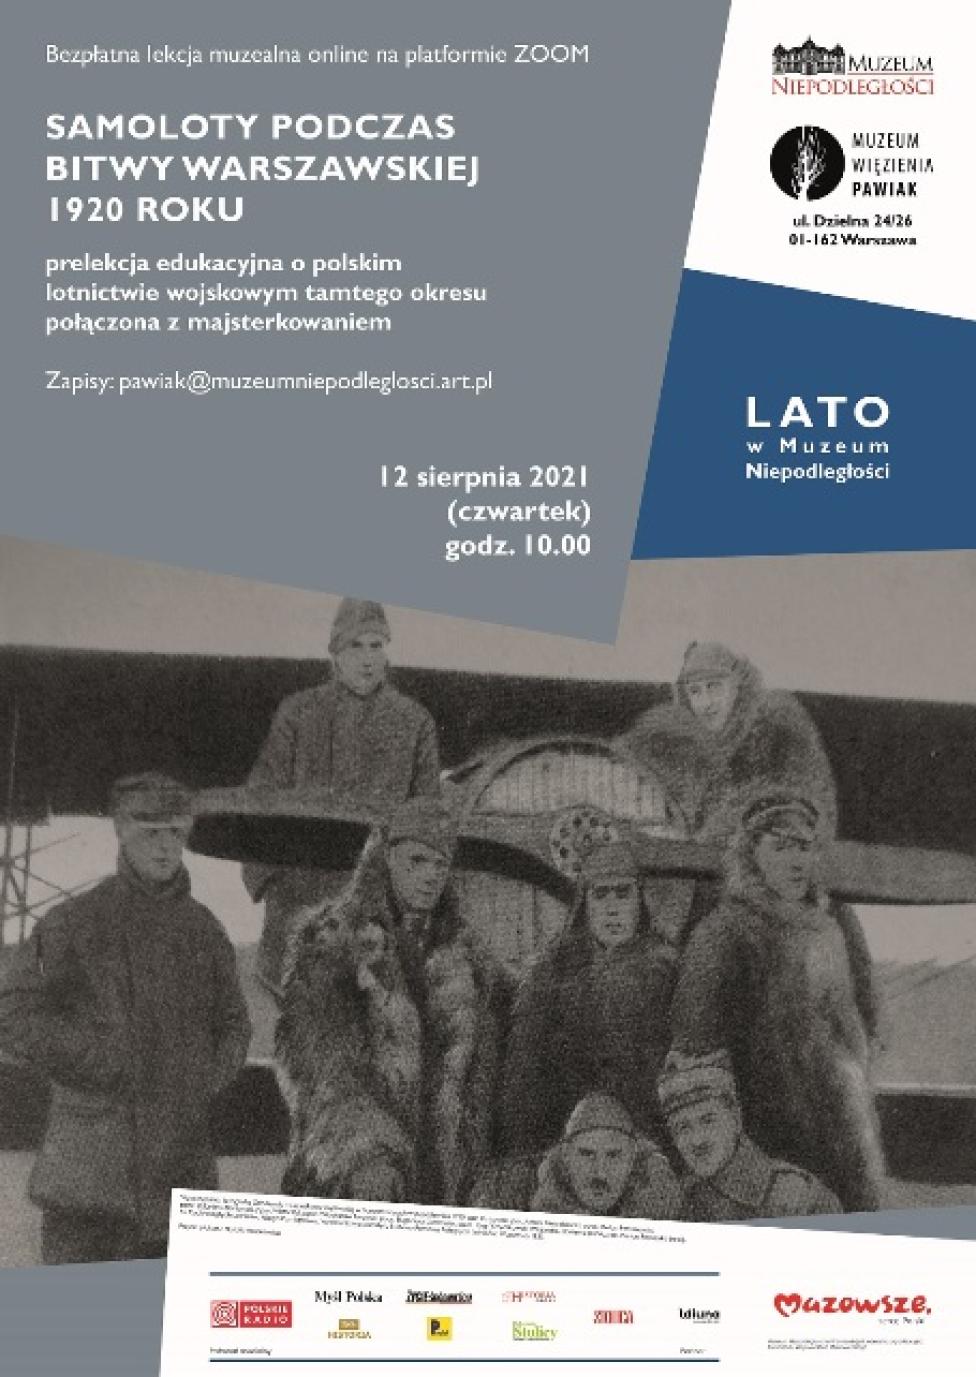 Prelekcja "Samoloty podczas Bitwy Warszawskiej 1920 roku" (fot. Muzeum Niepodległości w Warszawie)